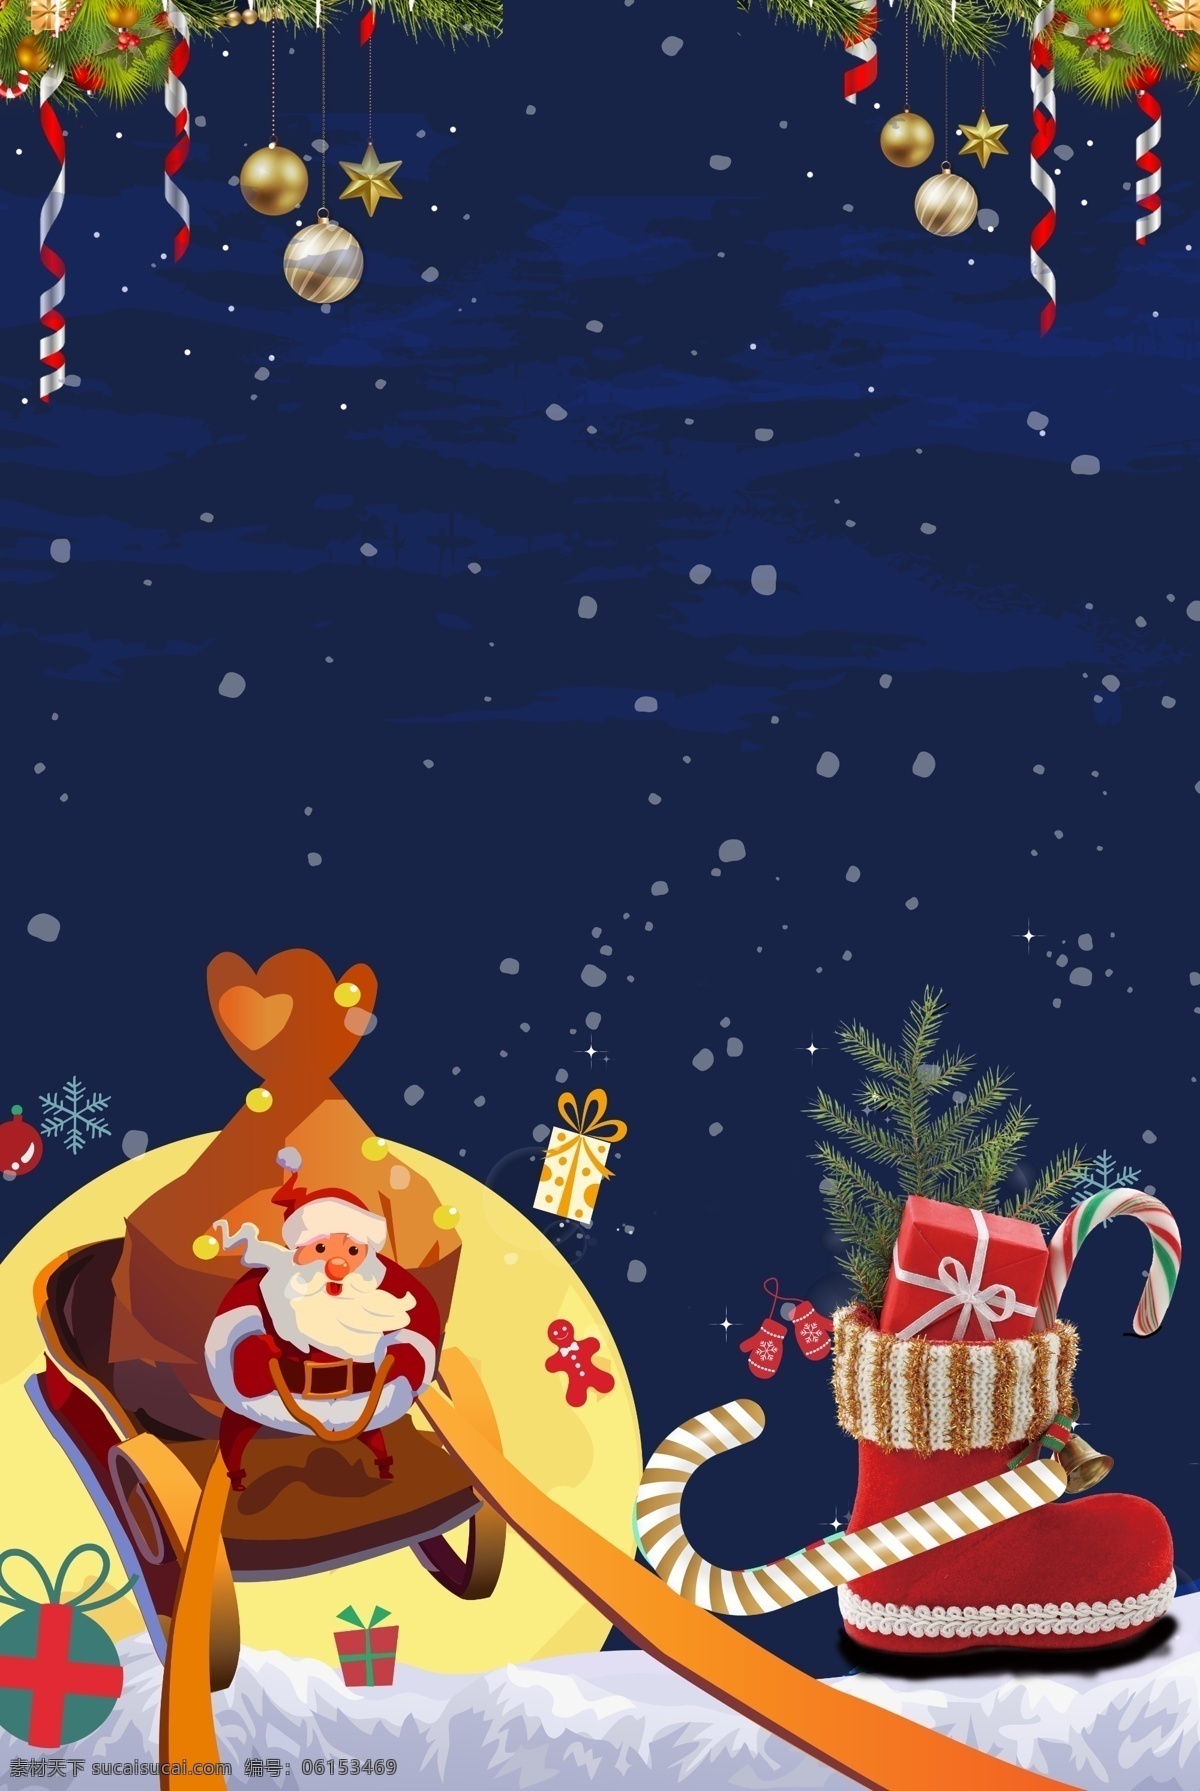 梦幻 蓝色 圣诞节 卡通 广告 背景 图 雪花 可爱 雪松 袜子 欢乐 扁平风 雪人 圣诞老人 圣诞树 卡通风 广告背景